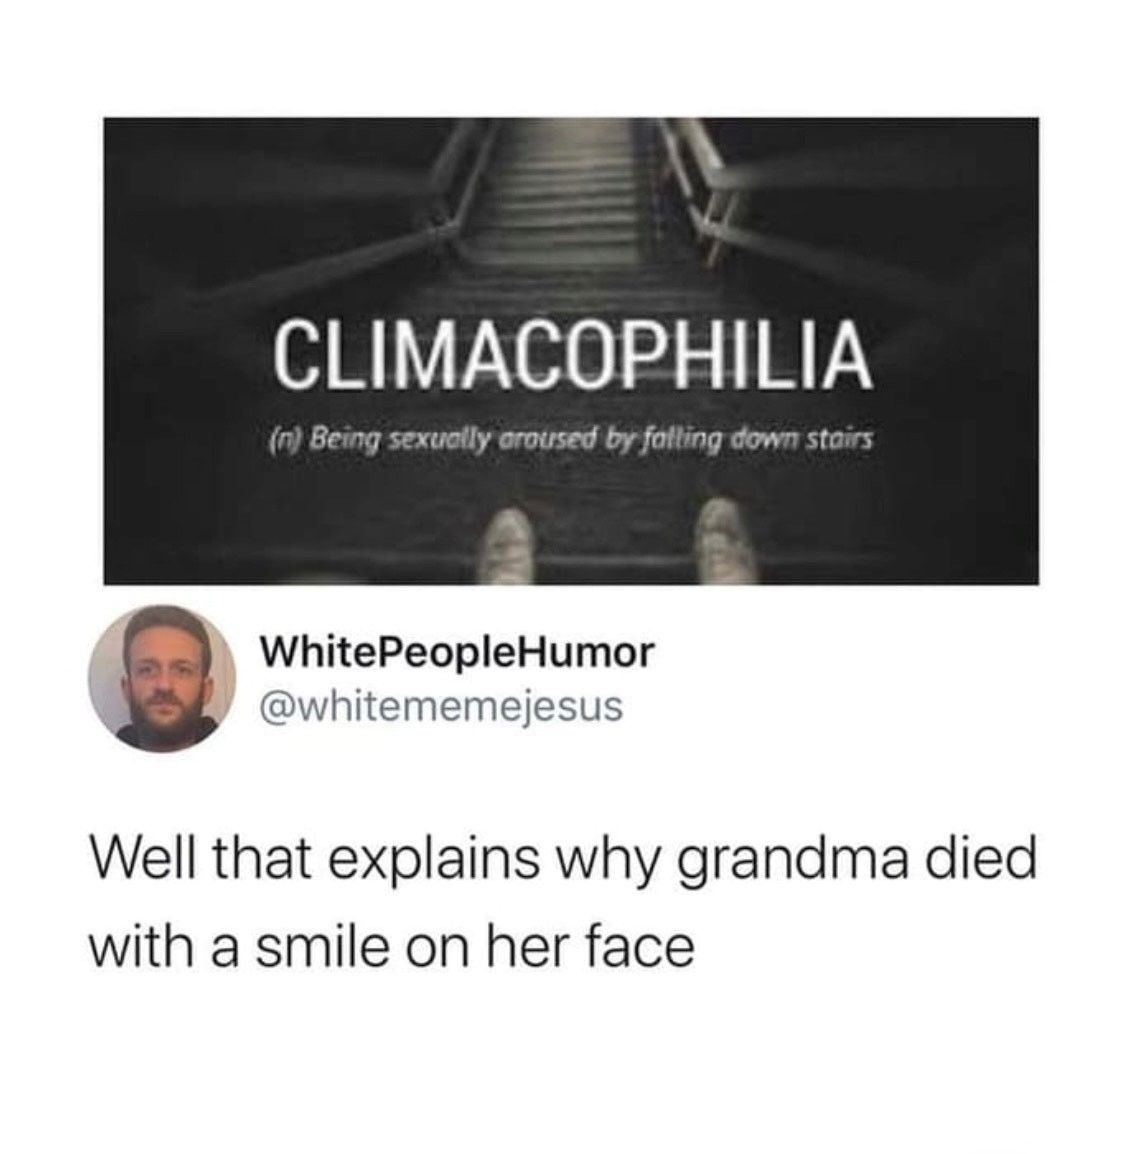 R.I.P. Grandma